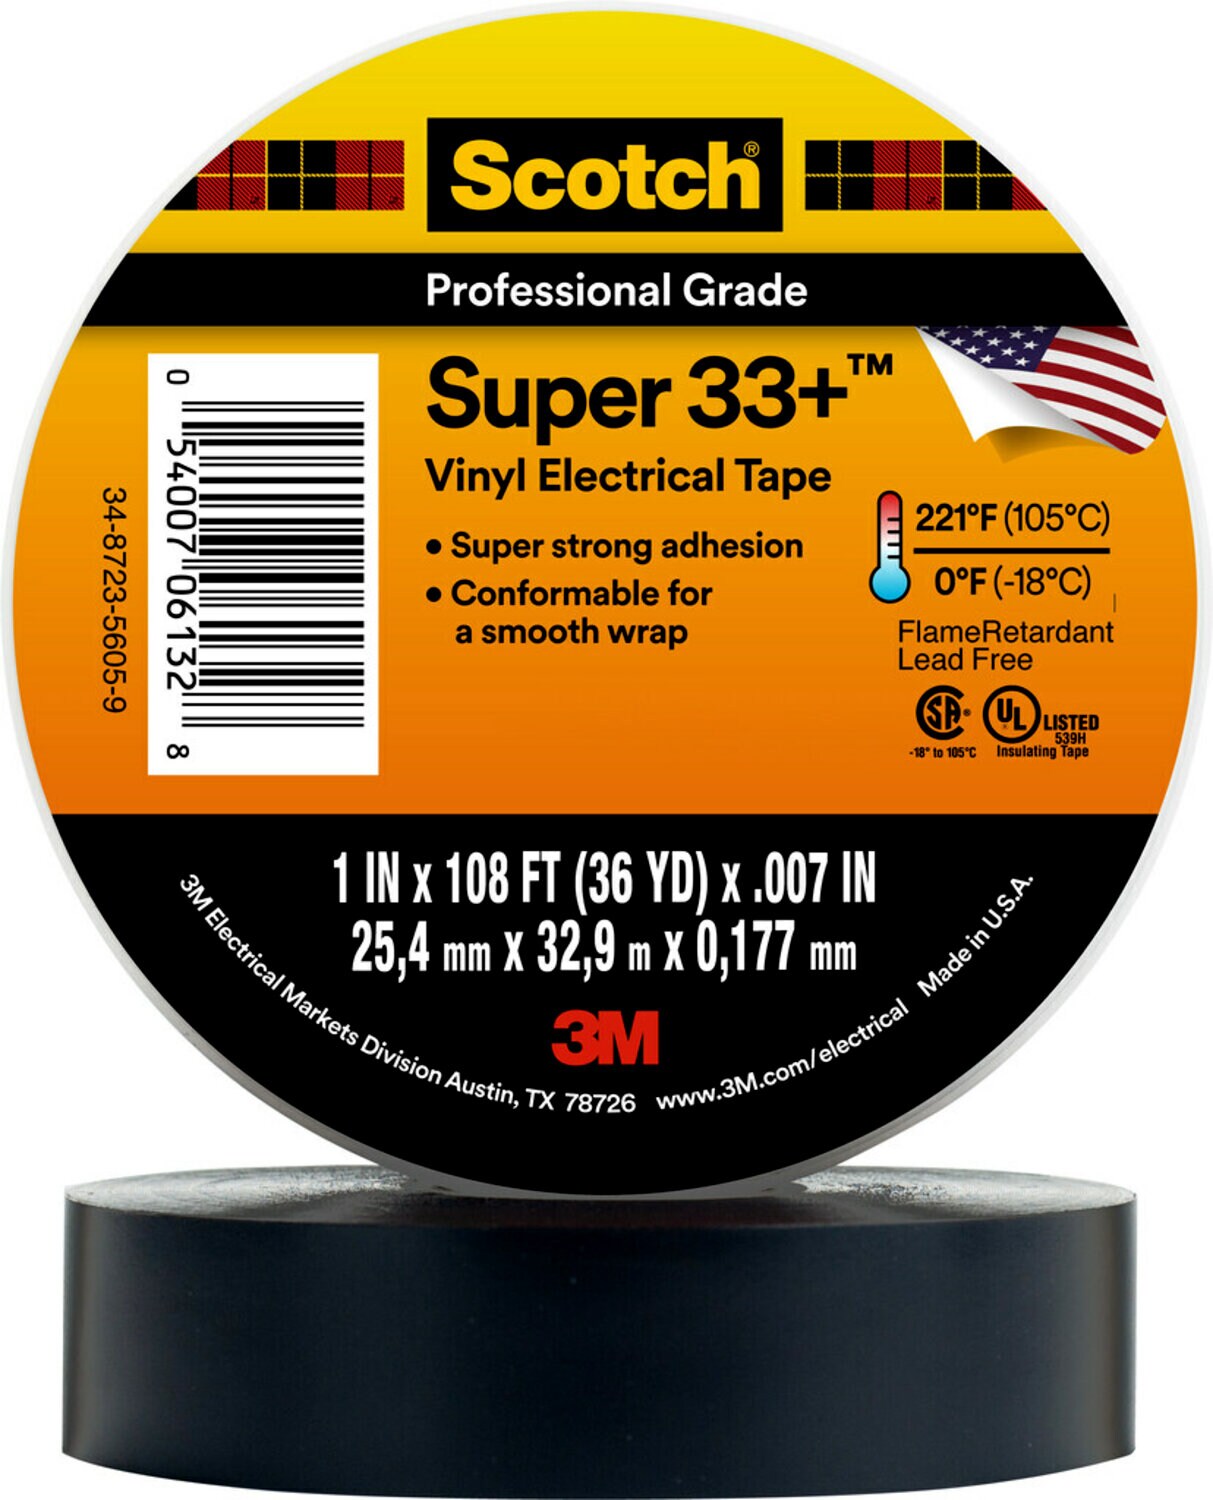 7000043003 - Scotch Super 33+ Vinyl Electrical Tape, 1 in x 36 yd, Black, 48
rolls/Case